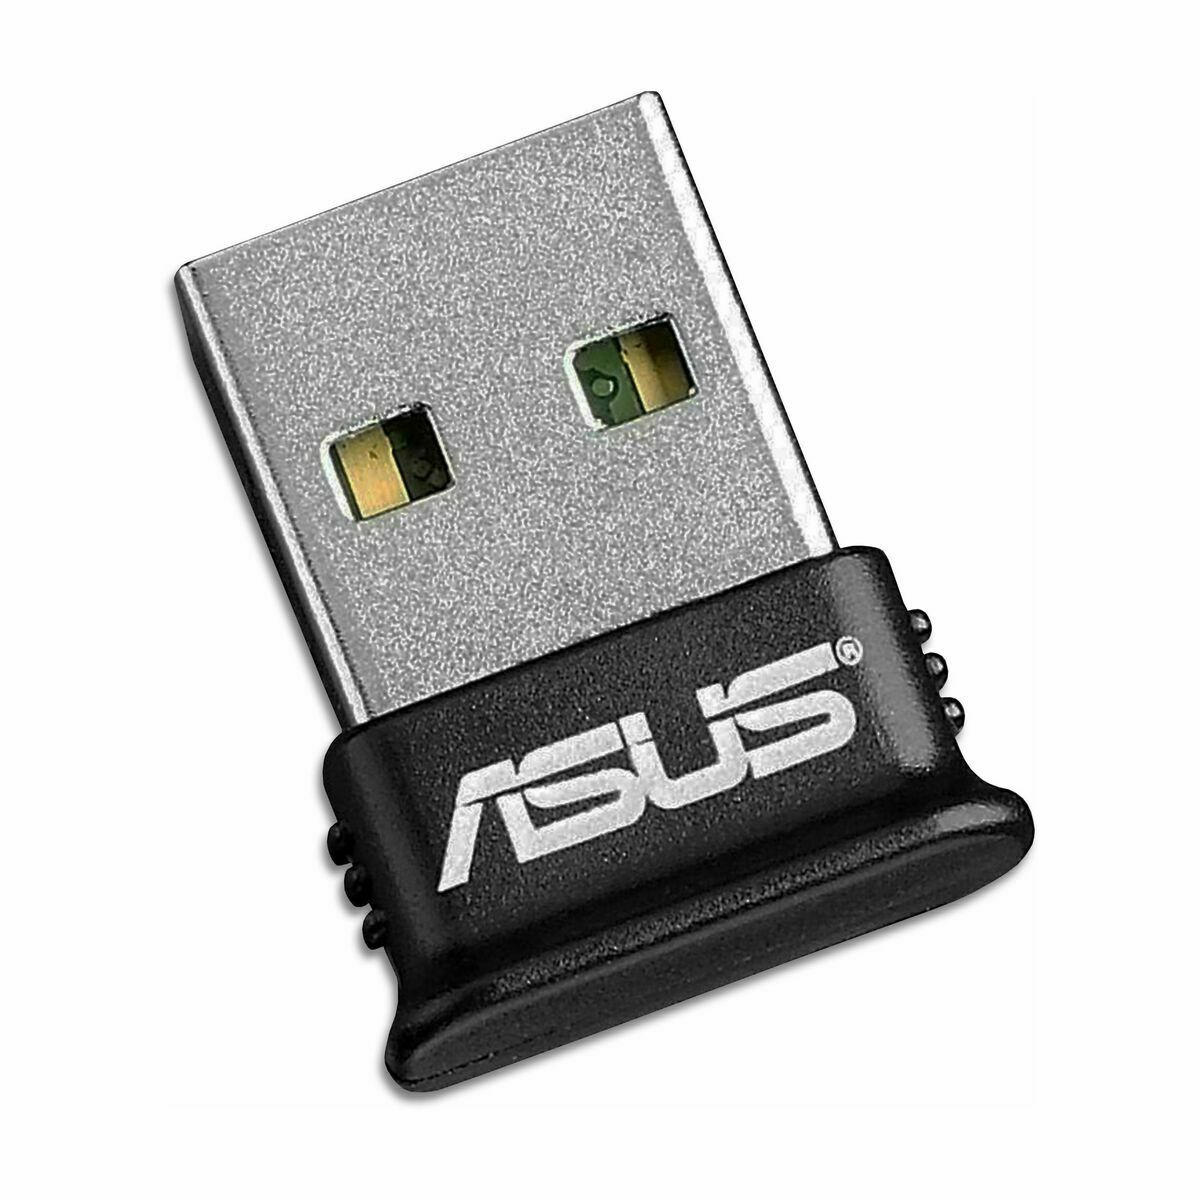 ASUS 4.0 USB-ADAPTER - Expert.dk